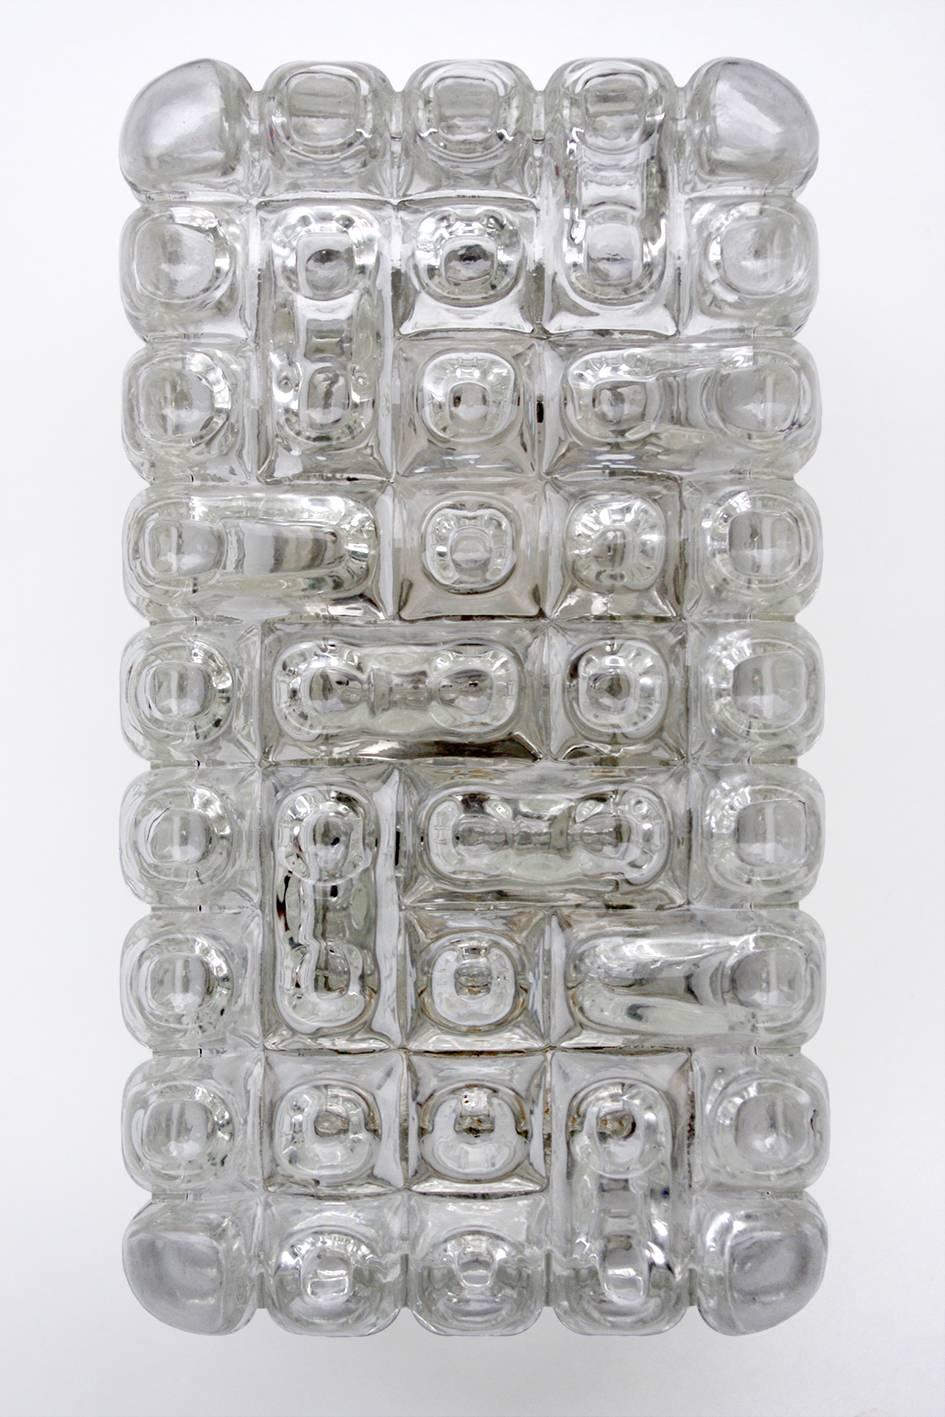 Un des ... beaux montages minimaux en verre soufflé à la bouche d'Aloys F. Gangkofner.
Allemagne, années 1960.
Douilles de lampe : Une x E27 (US E26).